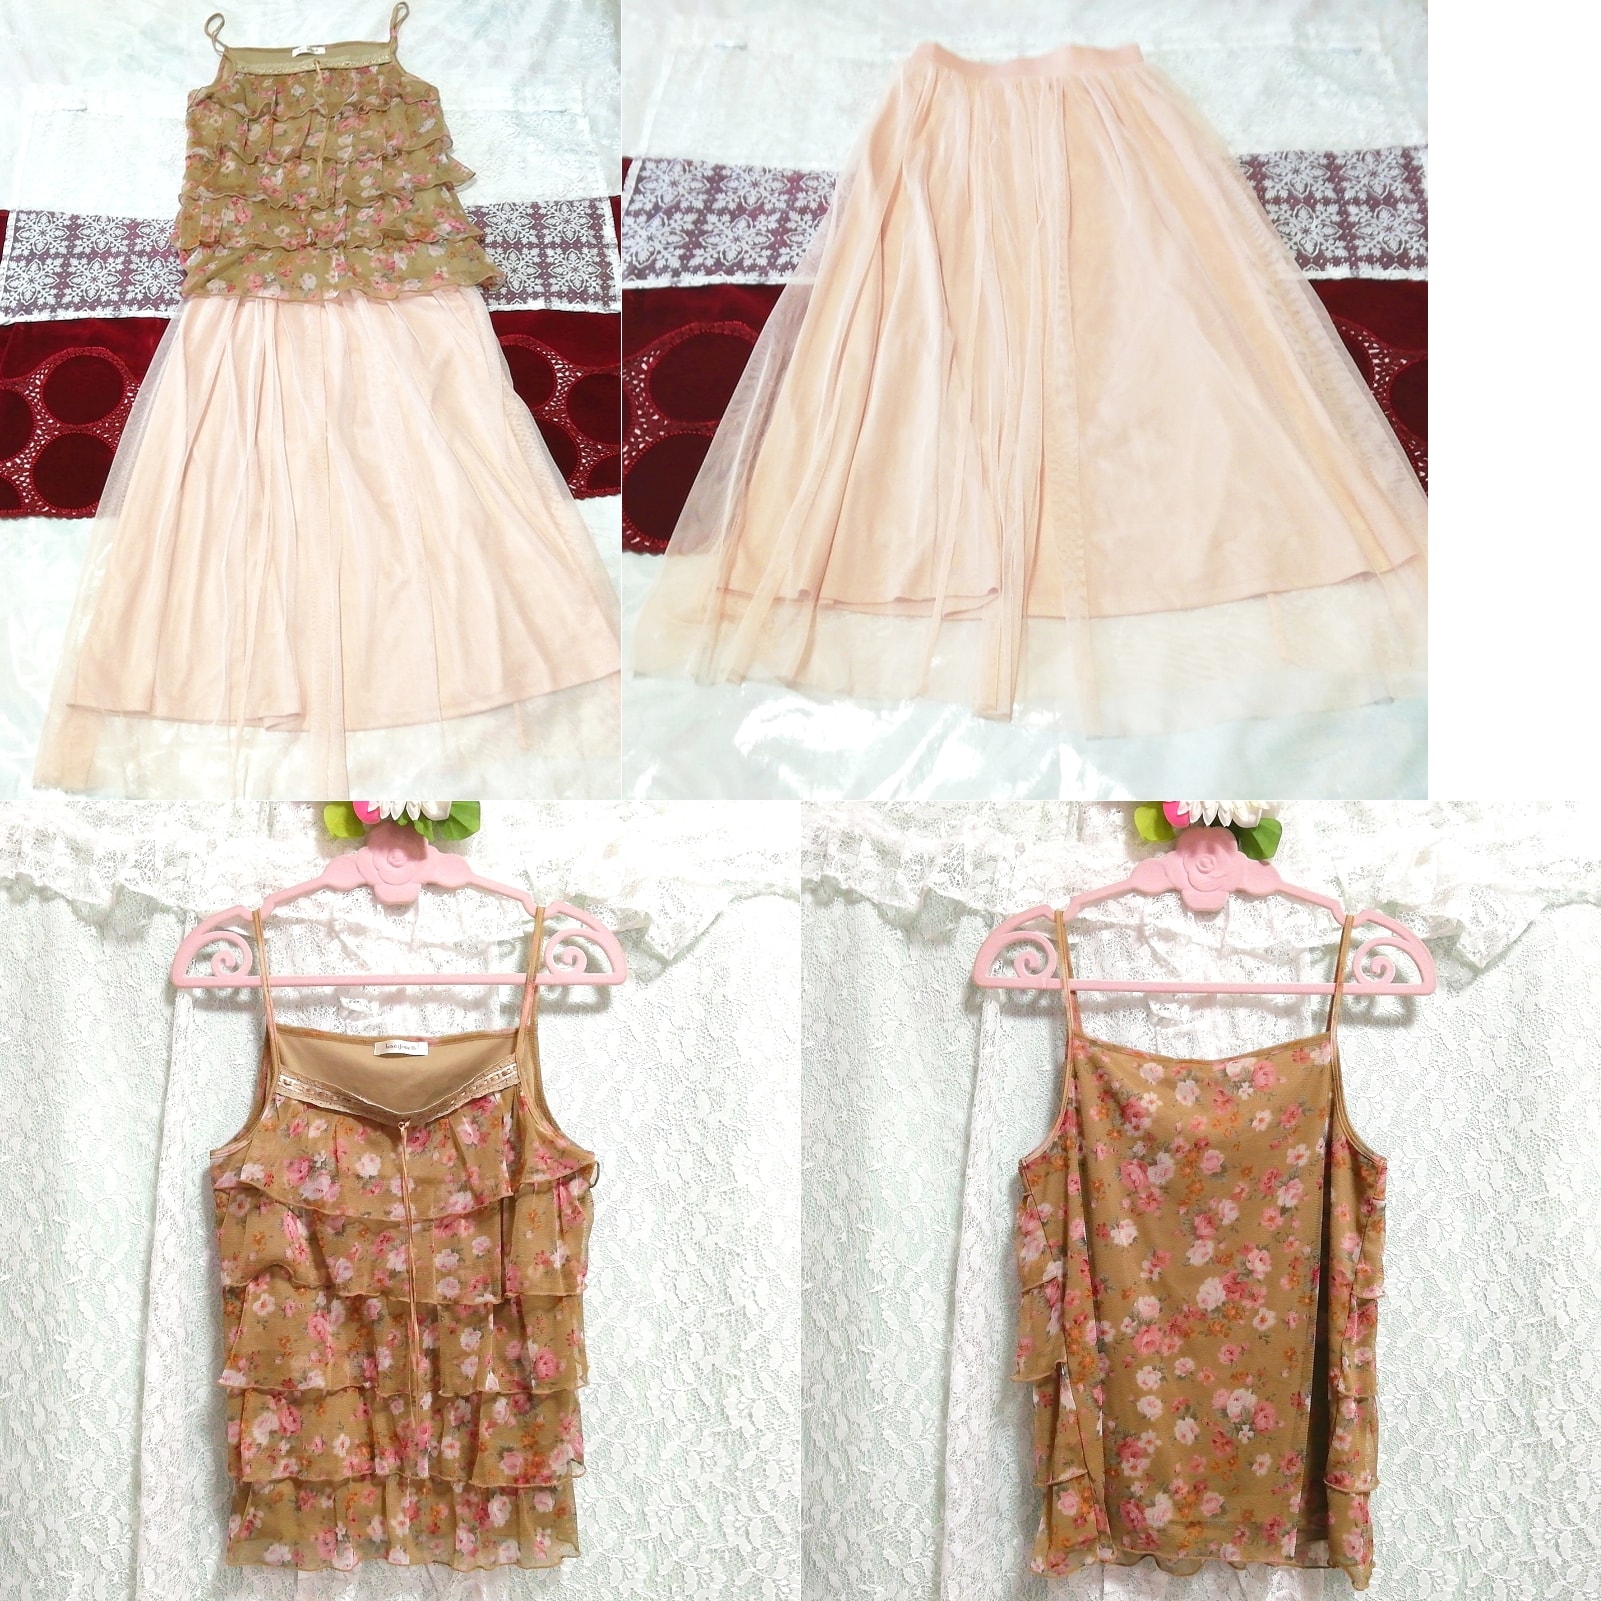 茶フリルキャミソール ネグリジェ ピンクロングチュールスカート 2P Brown chiffon camisole tops pink long tulle skirt, ファッション, レディースファッション, ナイトウエア、パジャマ